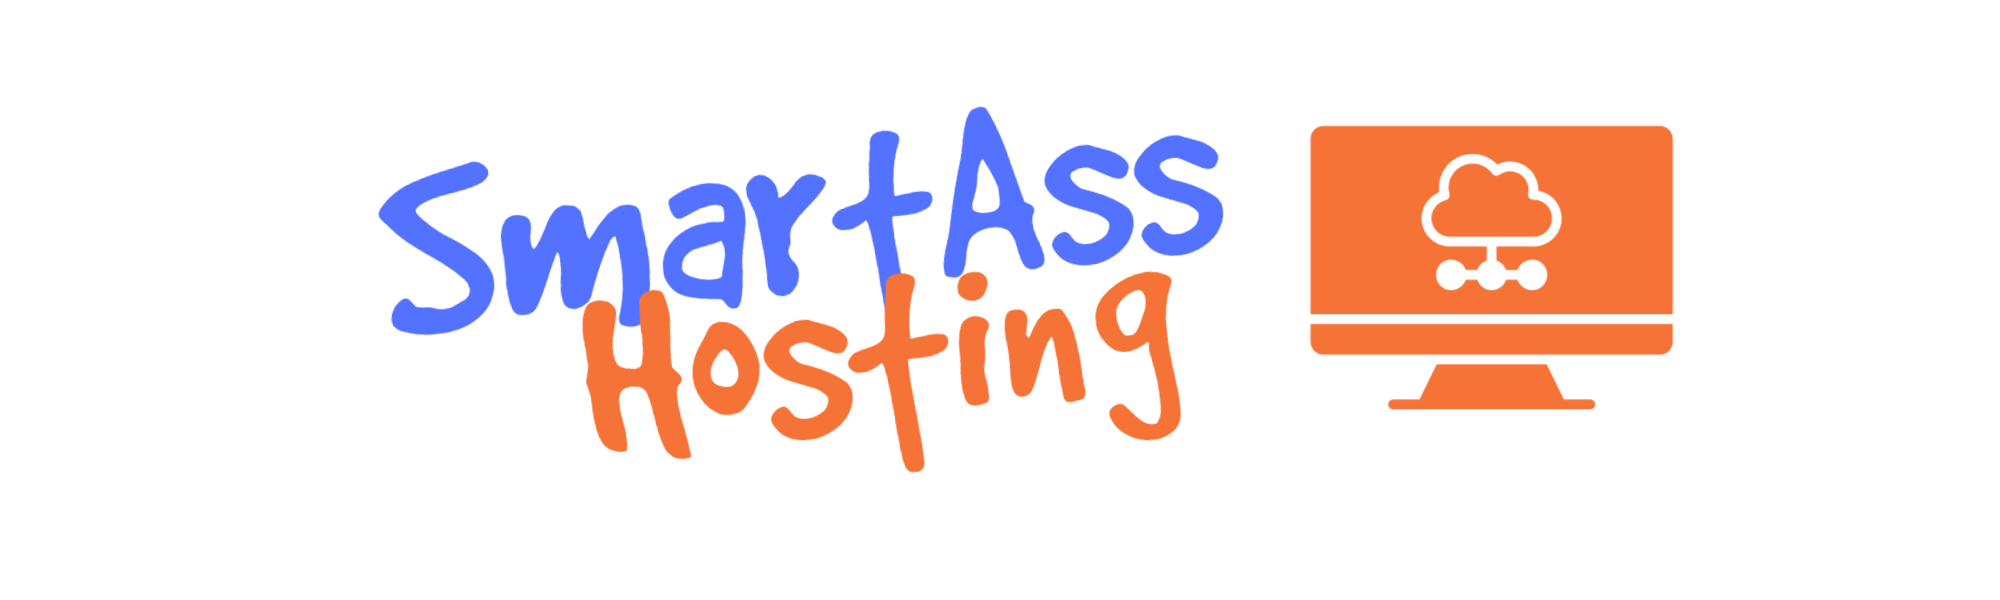 SmartAss Hosting